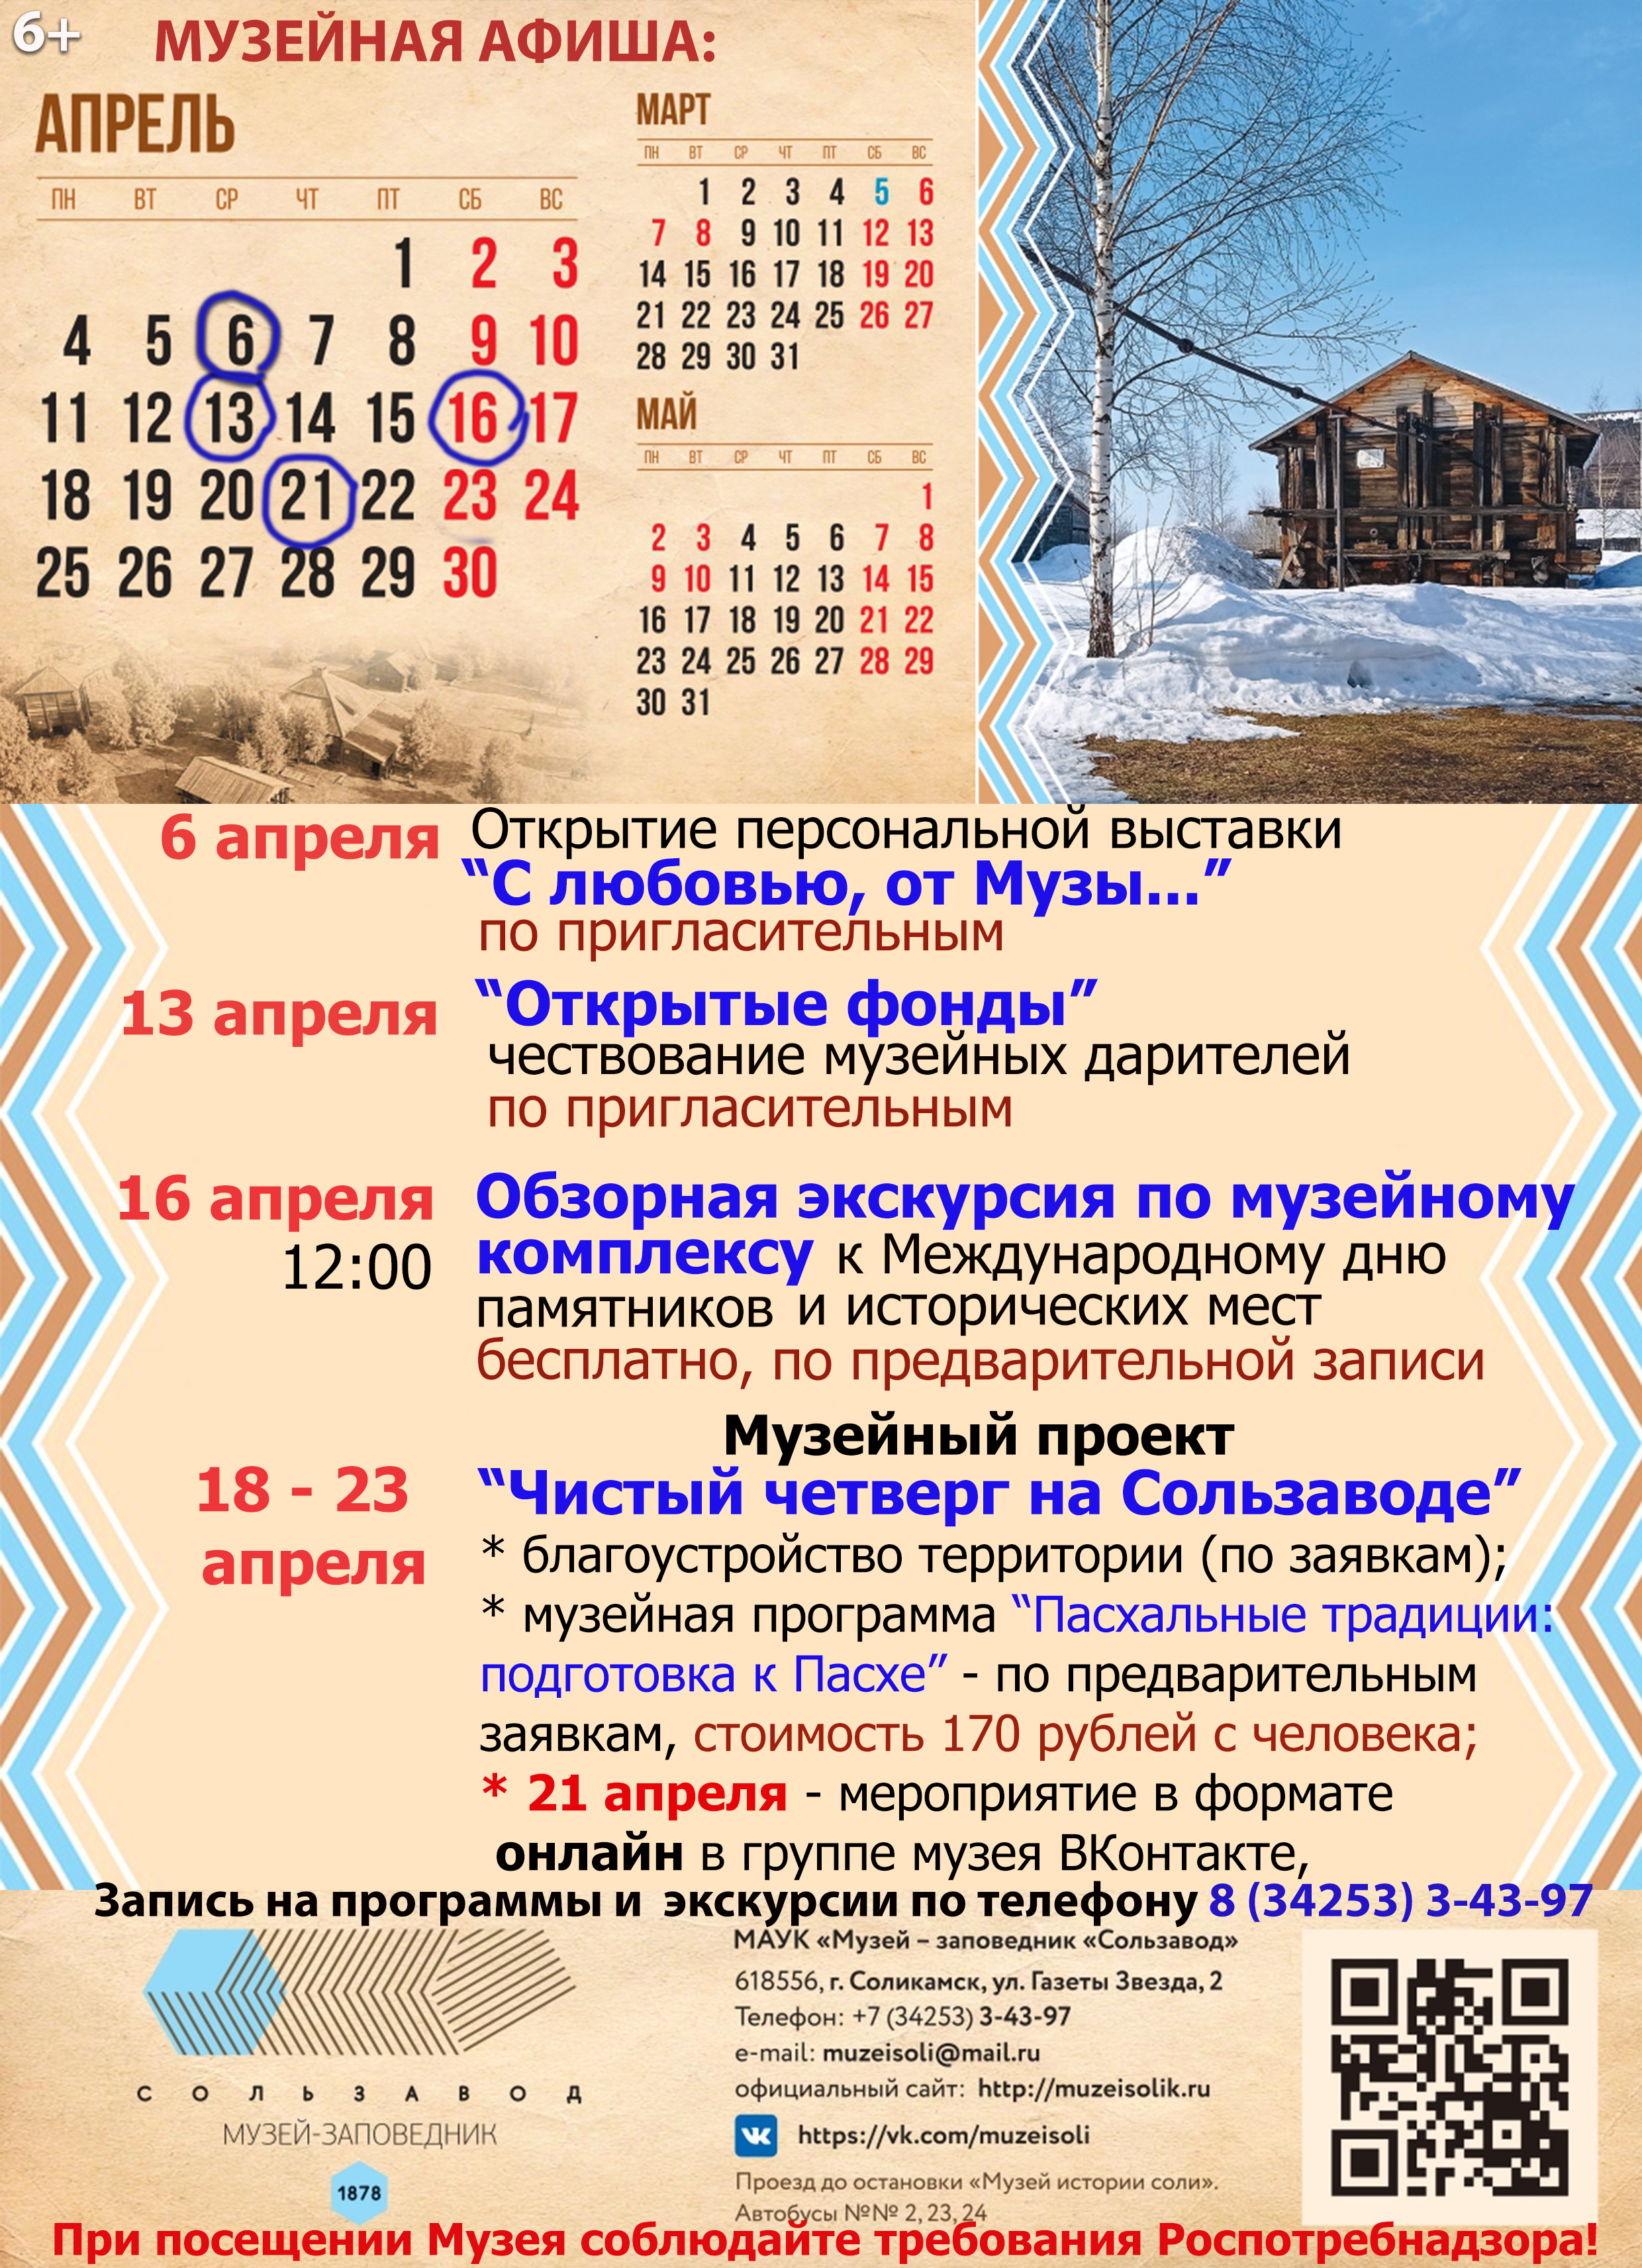 Календарь на 2022 год АПРЕЛЬ МЗС 2